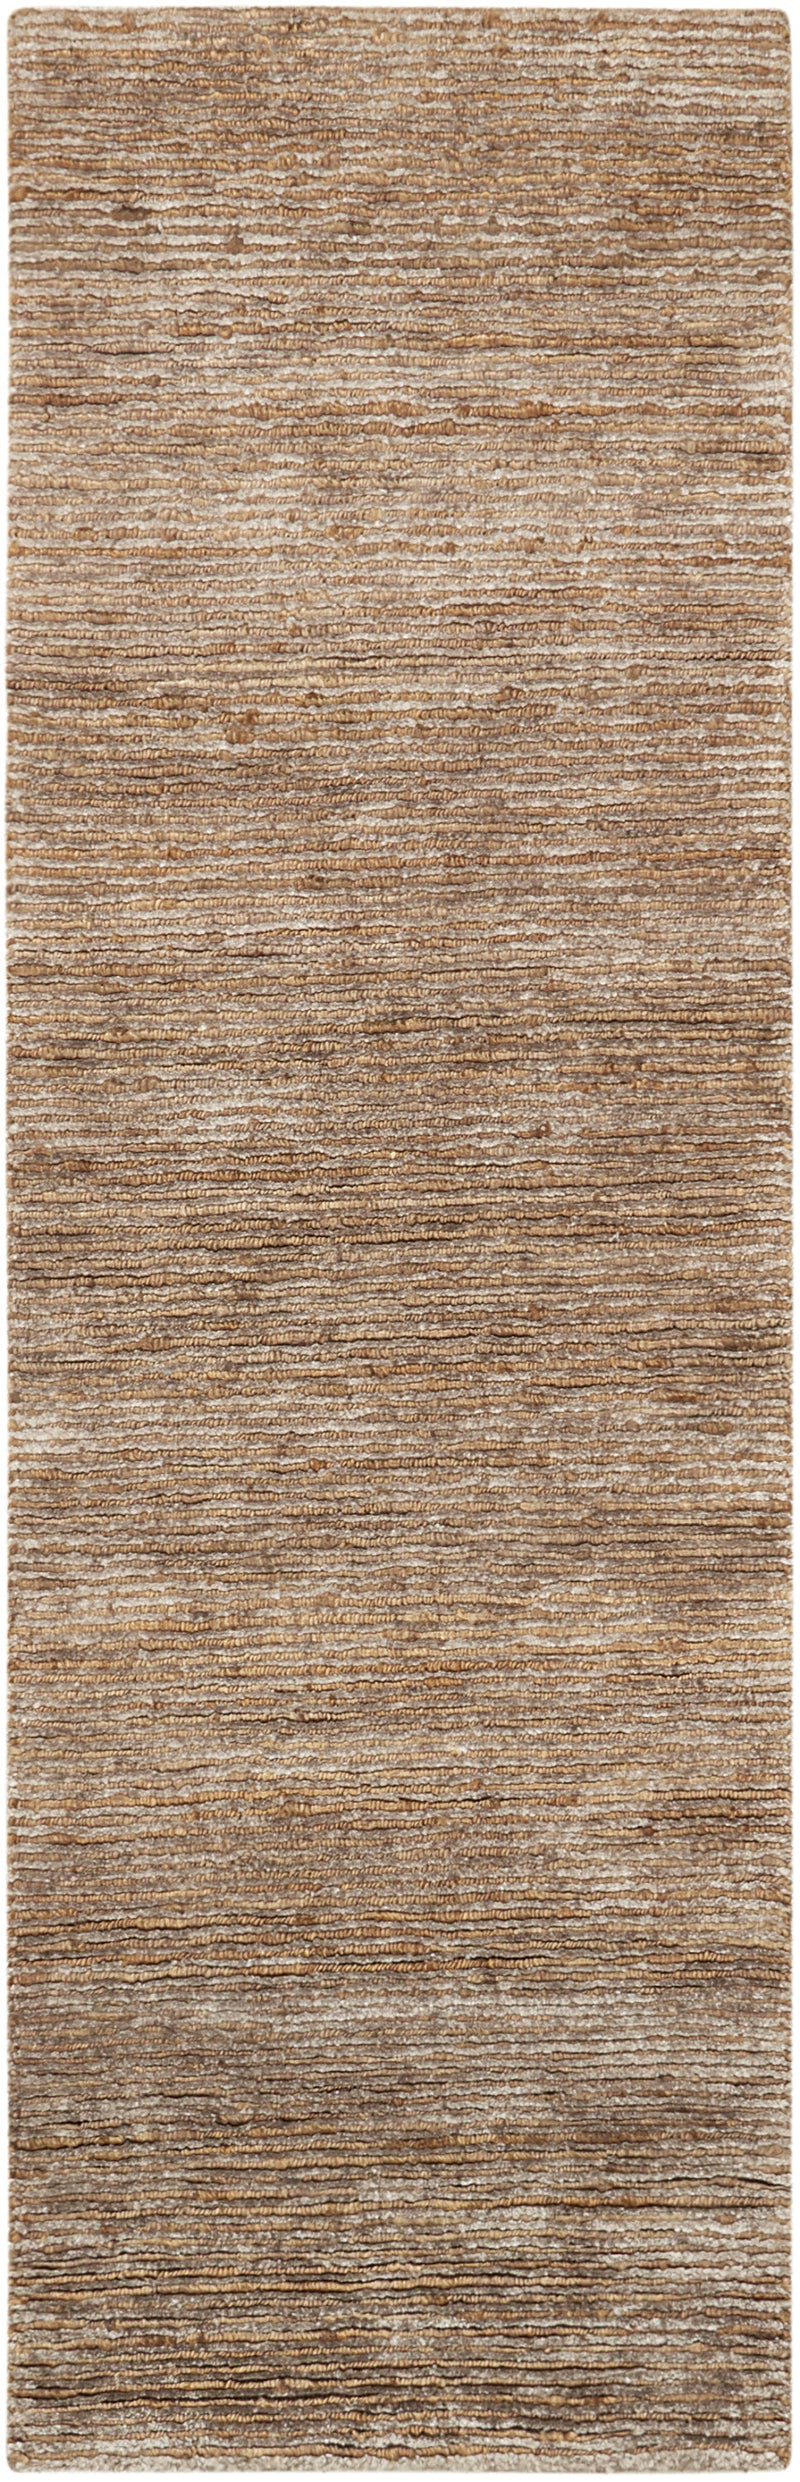 media image for mesa handmade amber rug by nourison 99446244871 redo 2 290